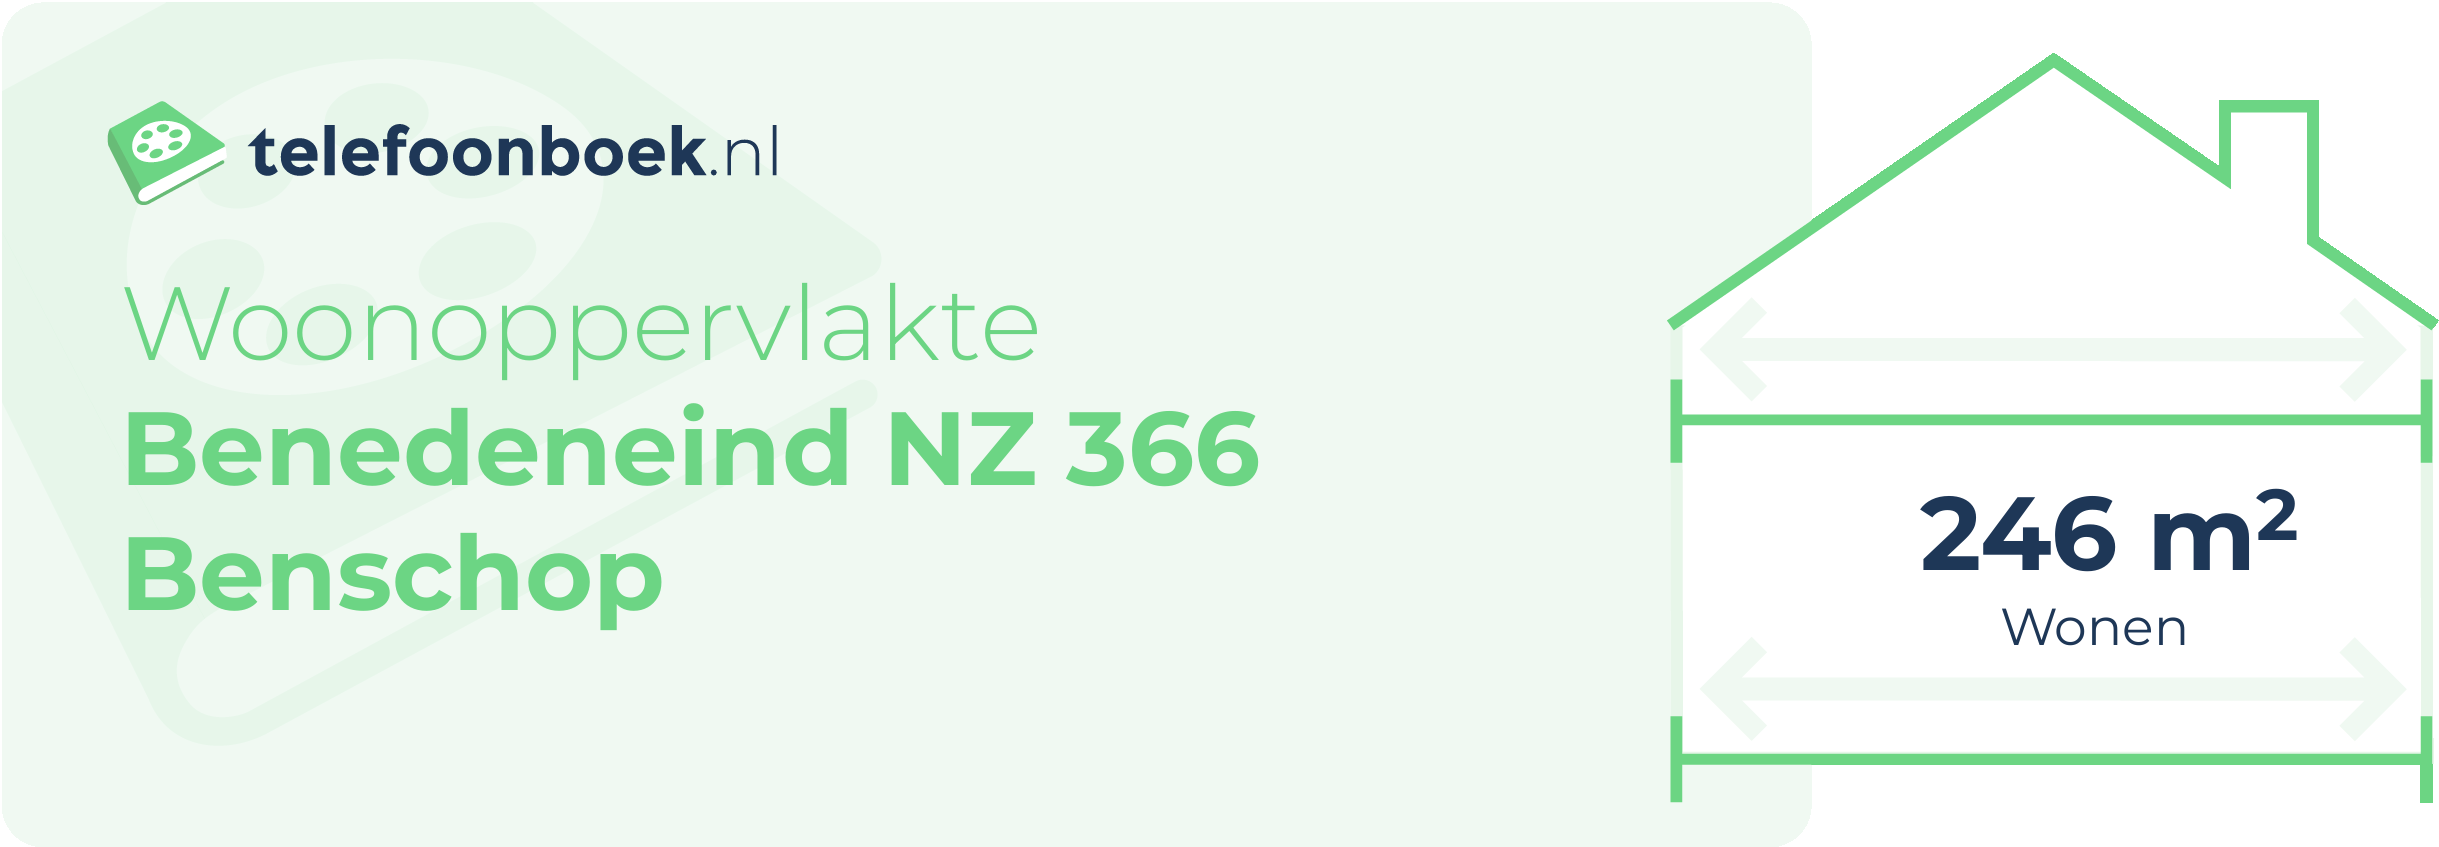 Woonoppervlakte Benedeneind NZ 366 Benschop